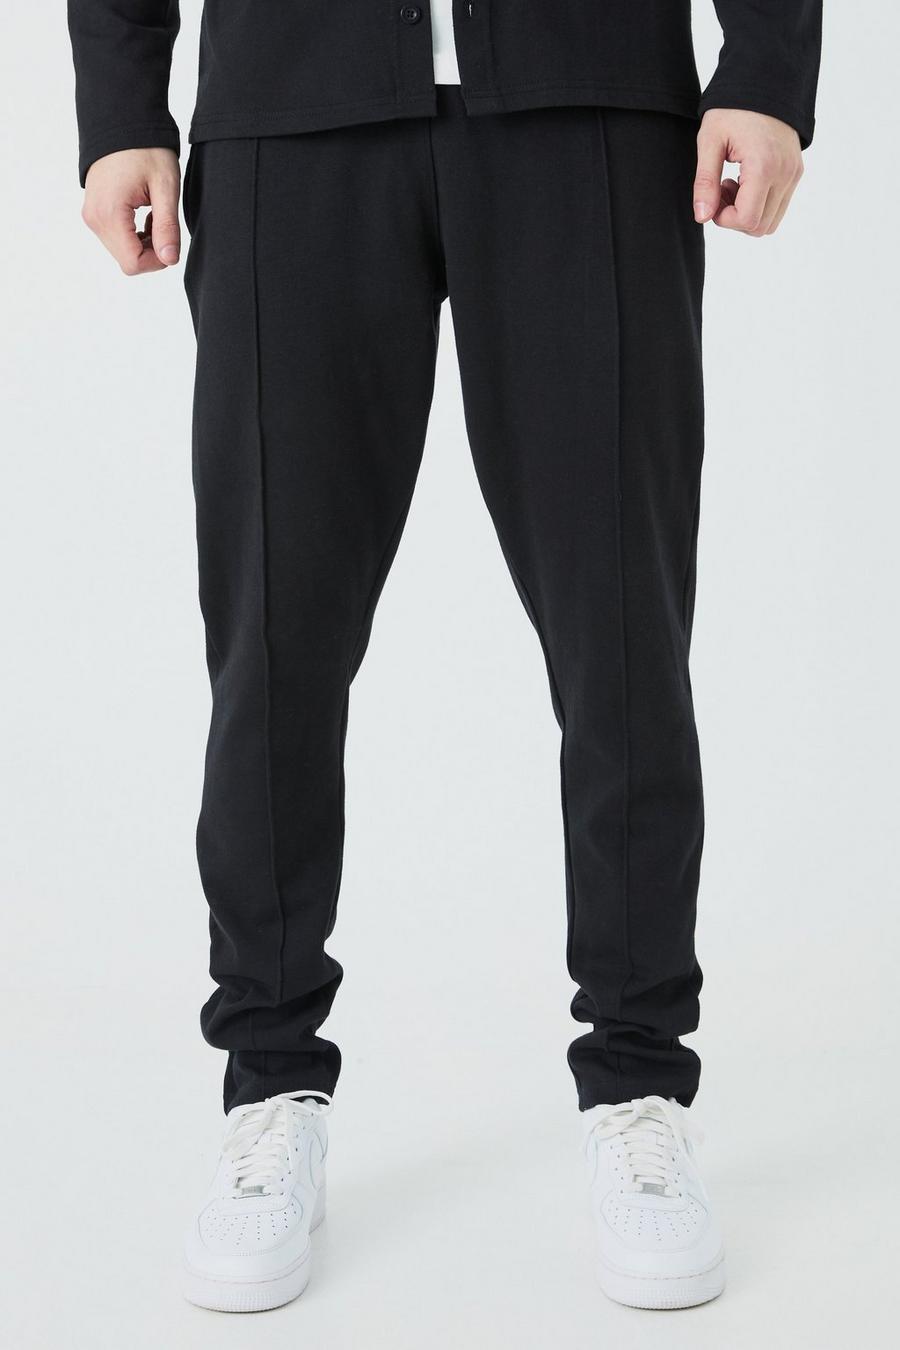 Pantalón deportivo Tall ajustado ajustado con alforza, Black image number 1